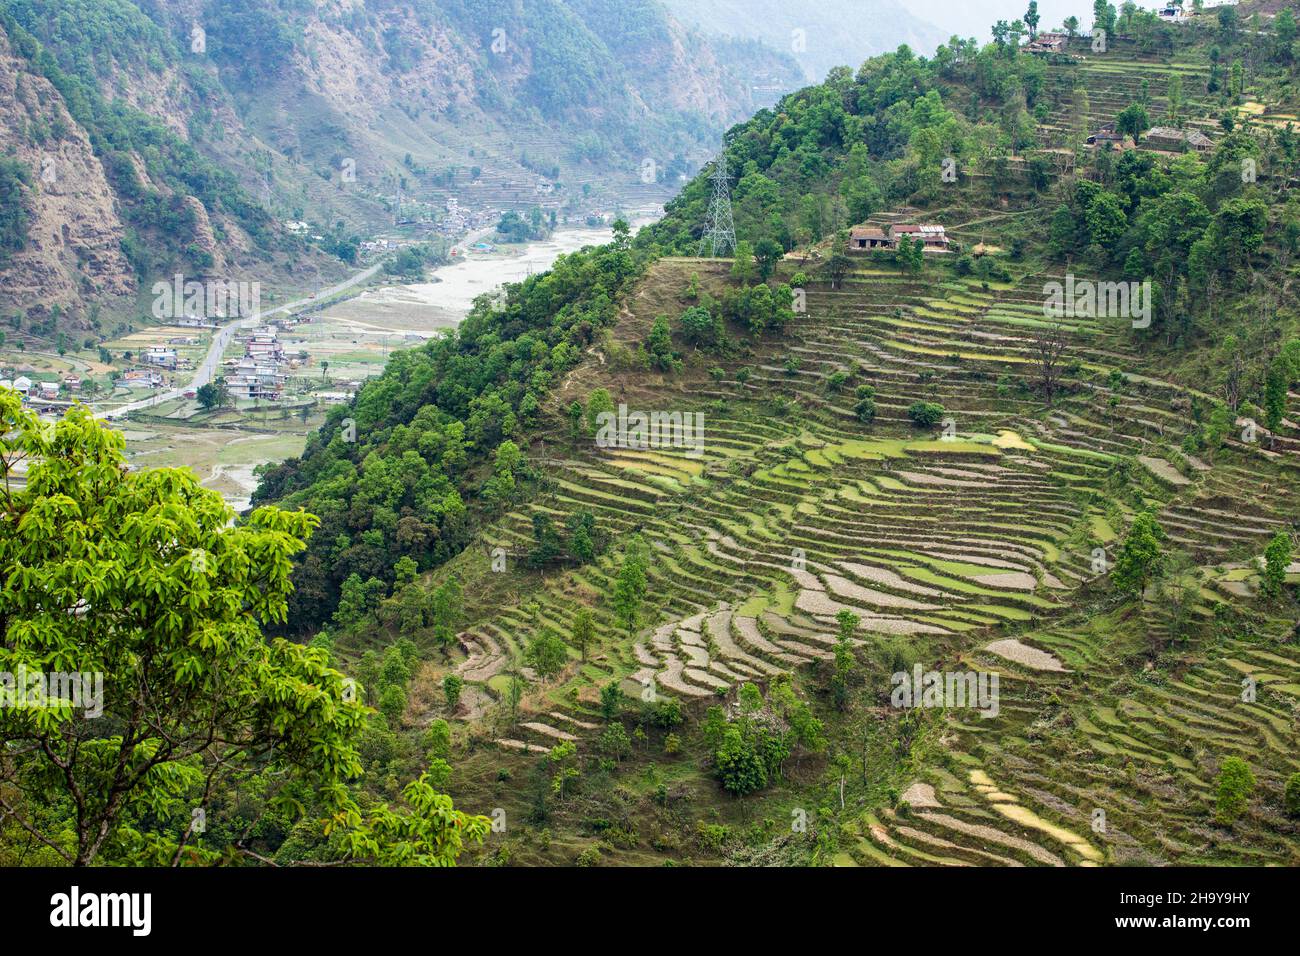 Reisterrassen am steilen Hang unterhalb des Himalaya-Vorgebirges Dhampus, Nepal. Unten befindet sich das Tal des Seti Gandaki River. Stockfoto